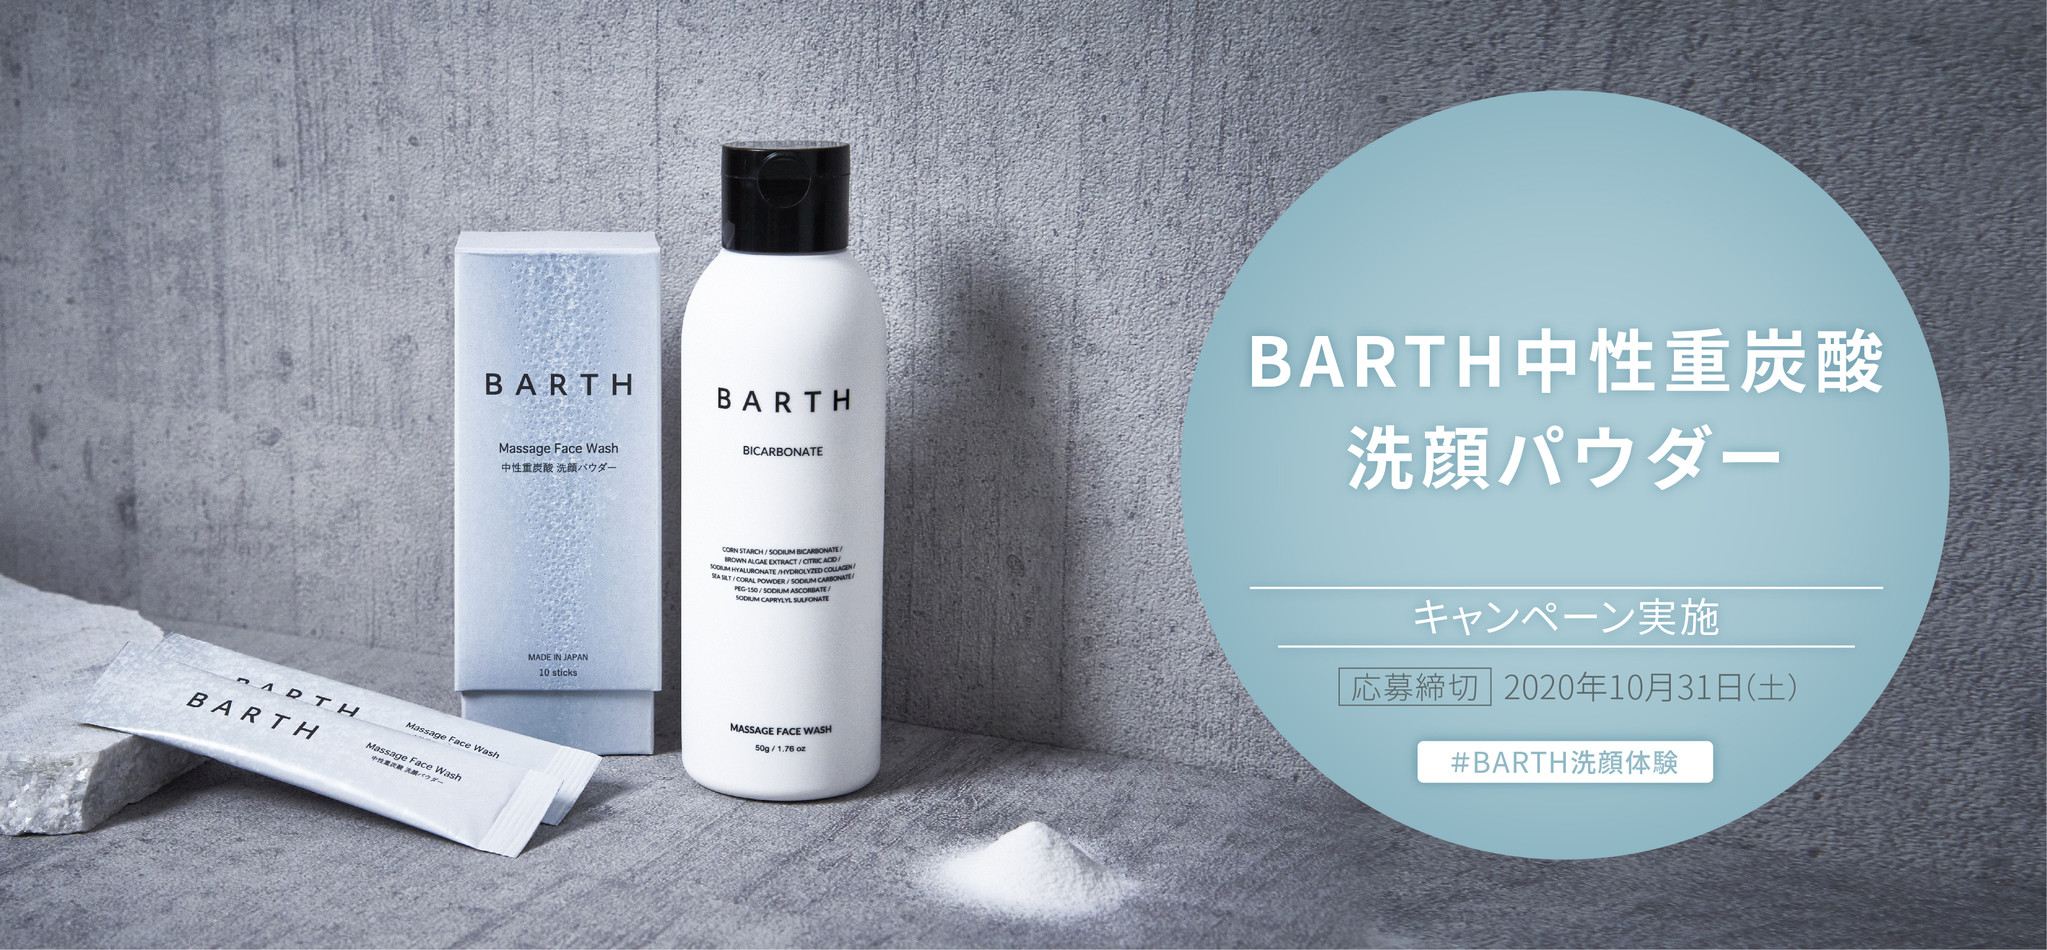 話題の中性重炭酸入浴剤ブランド「BARTH」から！BARTH洗顔